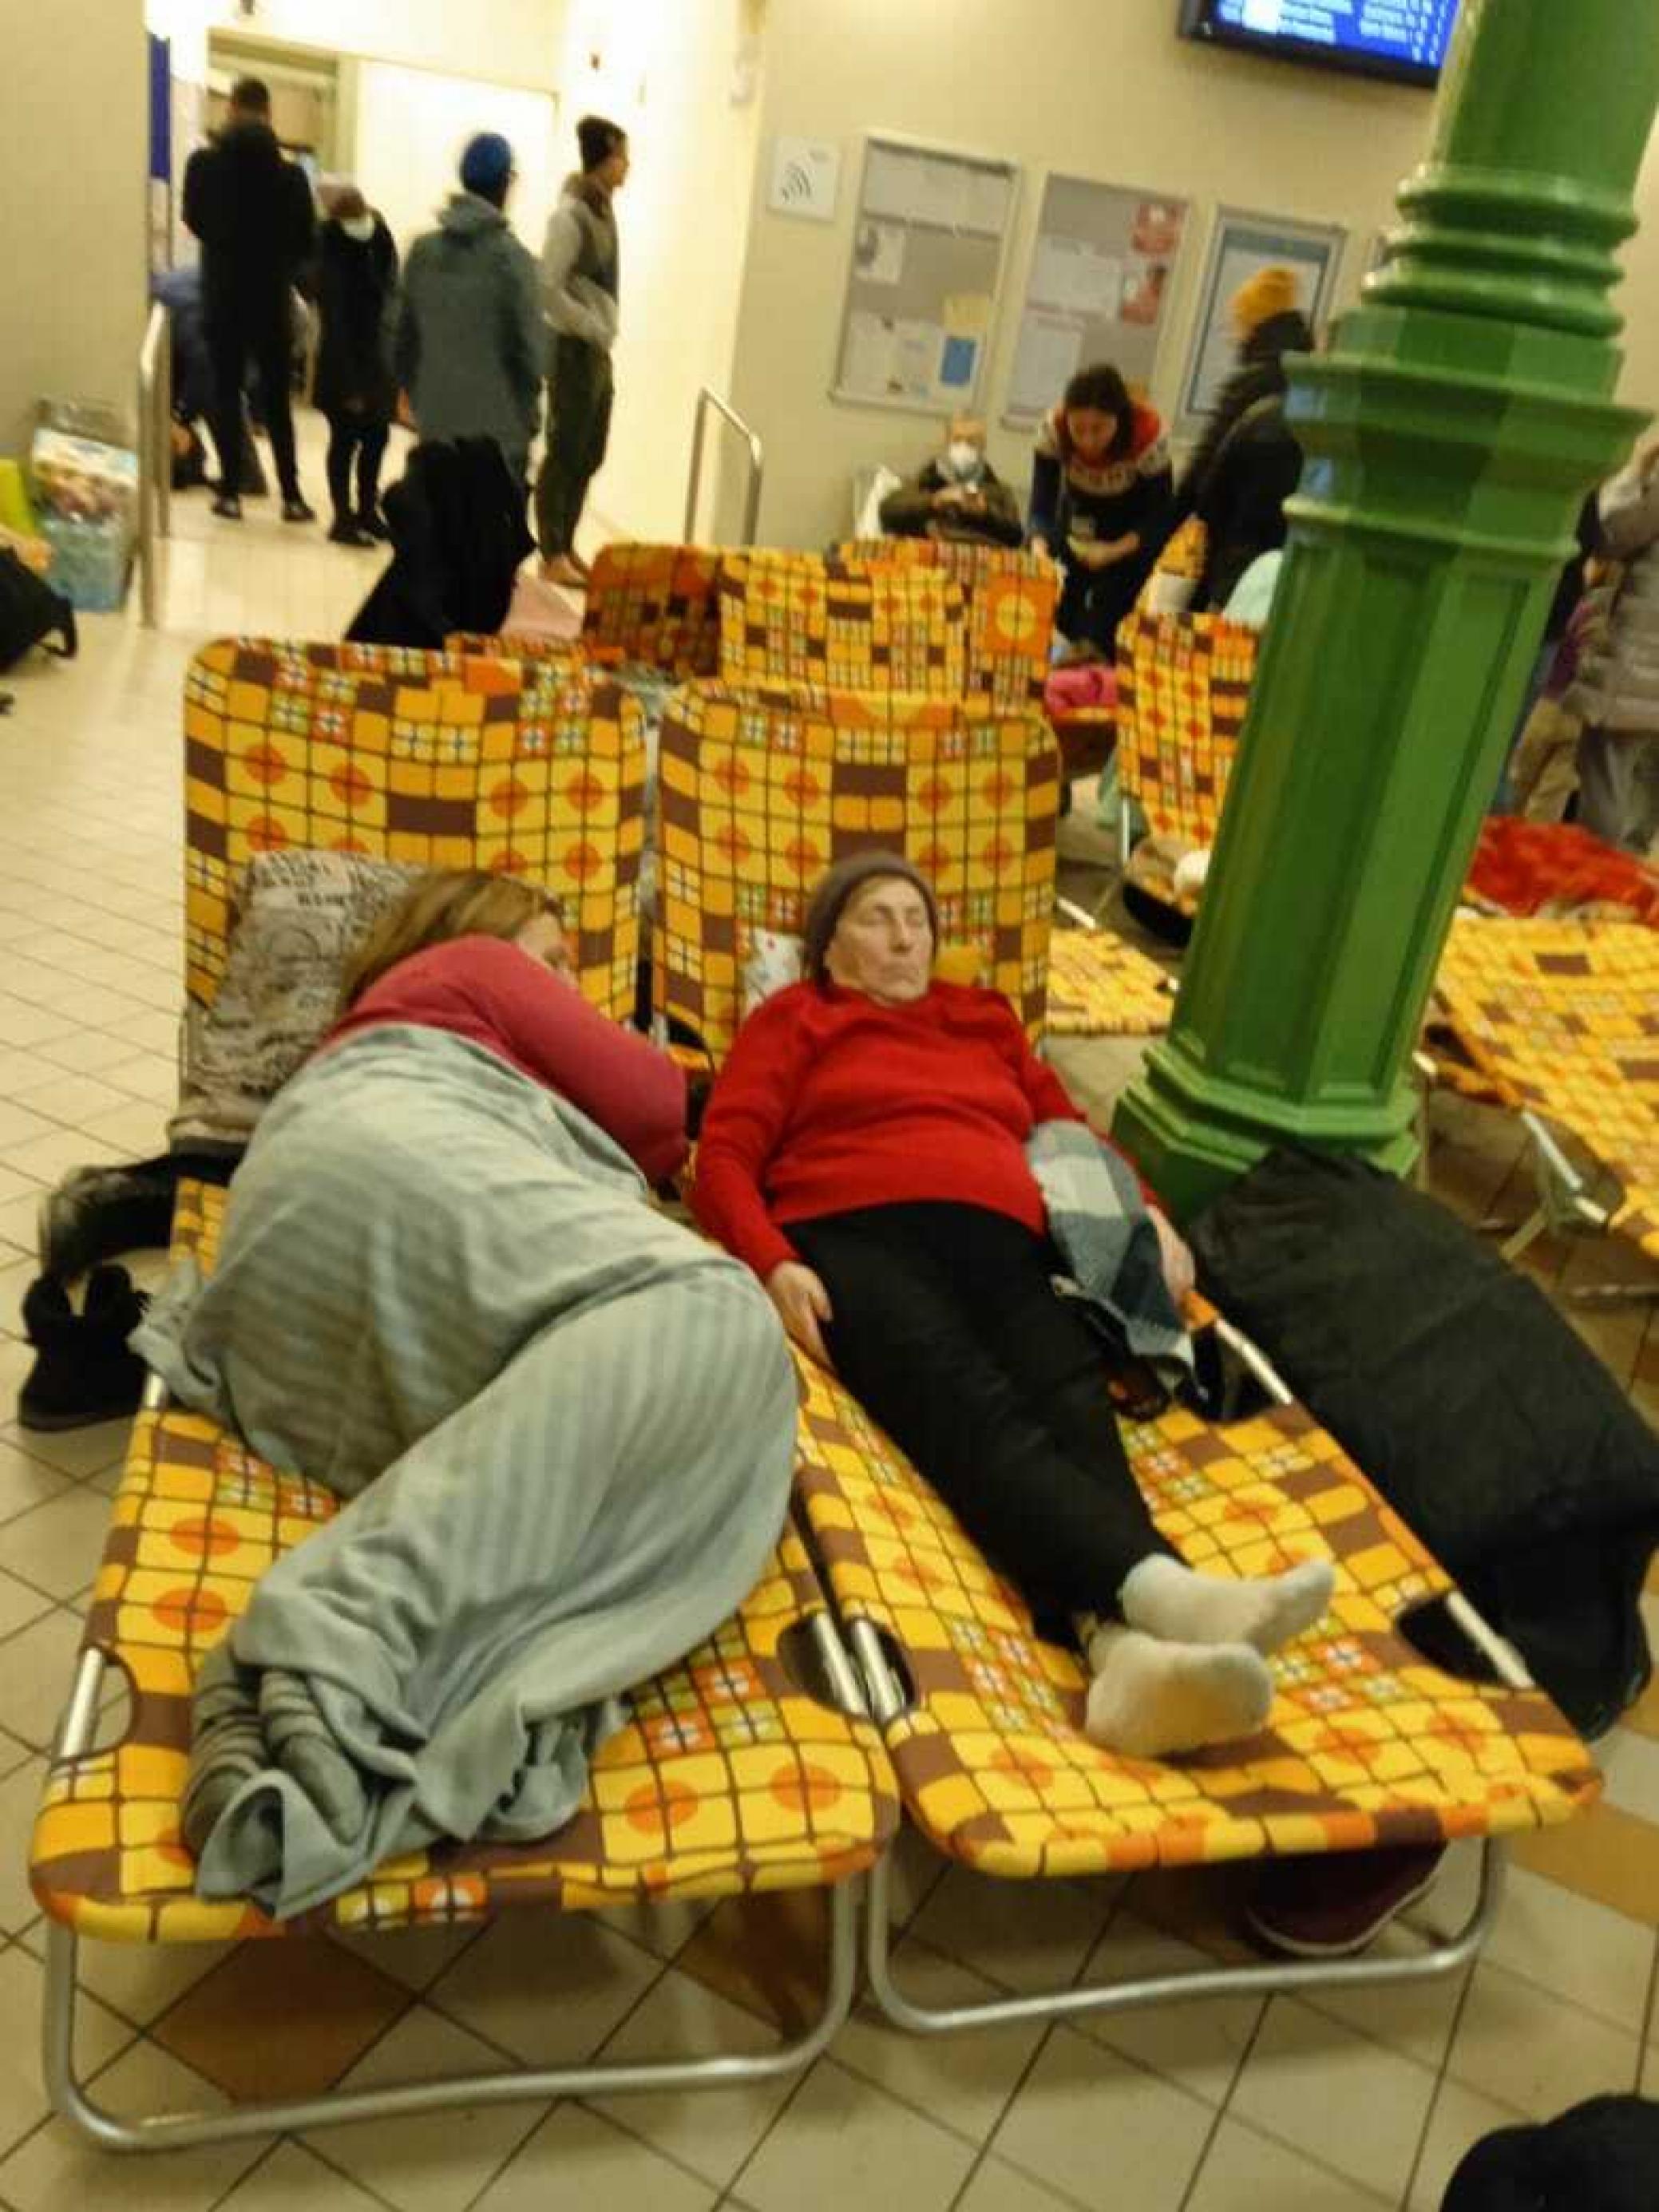 Zwei Frauen ruhen sich nach der Flucht auf gelben Liegen aus, dahinter stehen weitere Menschen in dem polnischen Bahnhofsgebäude